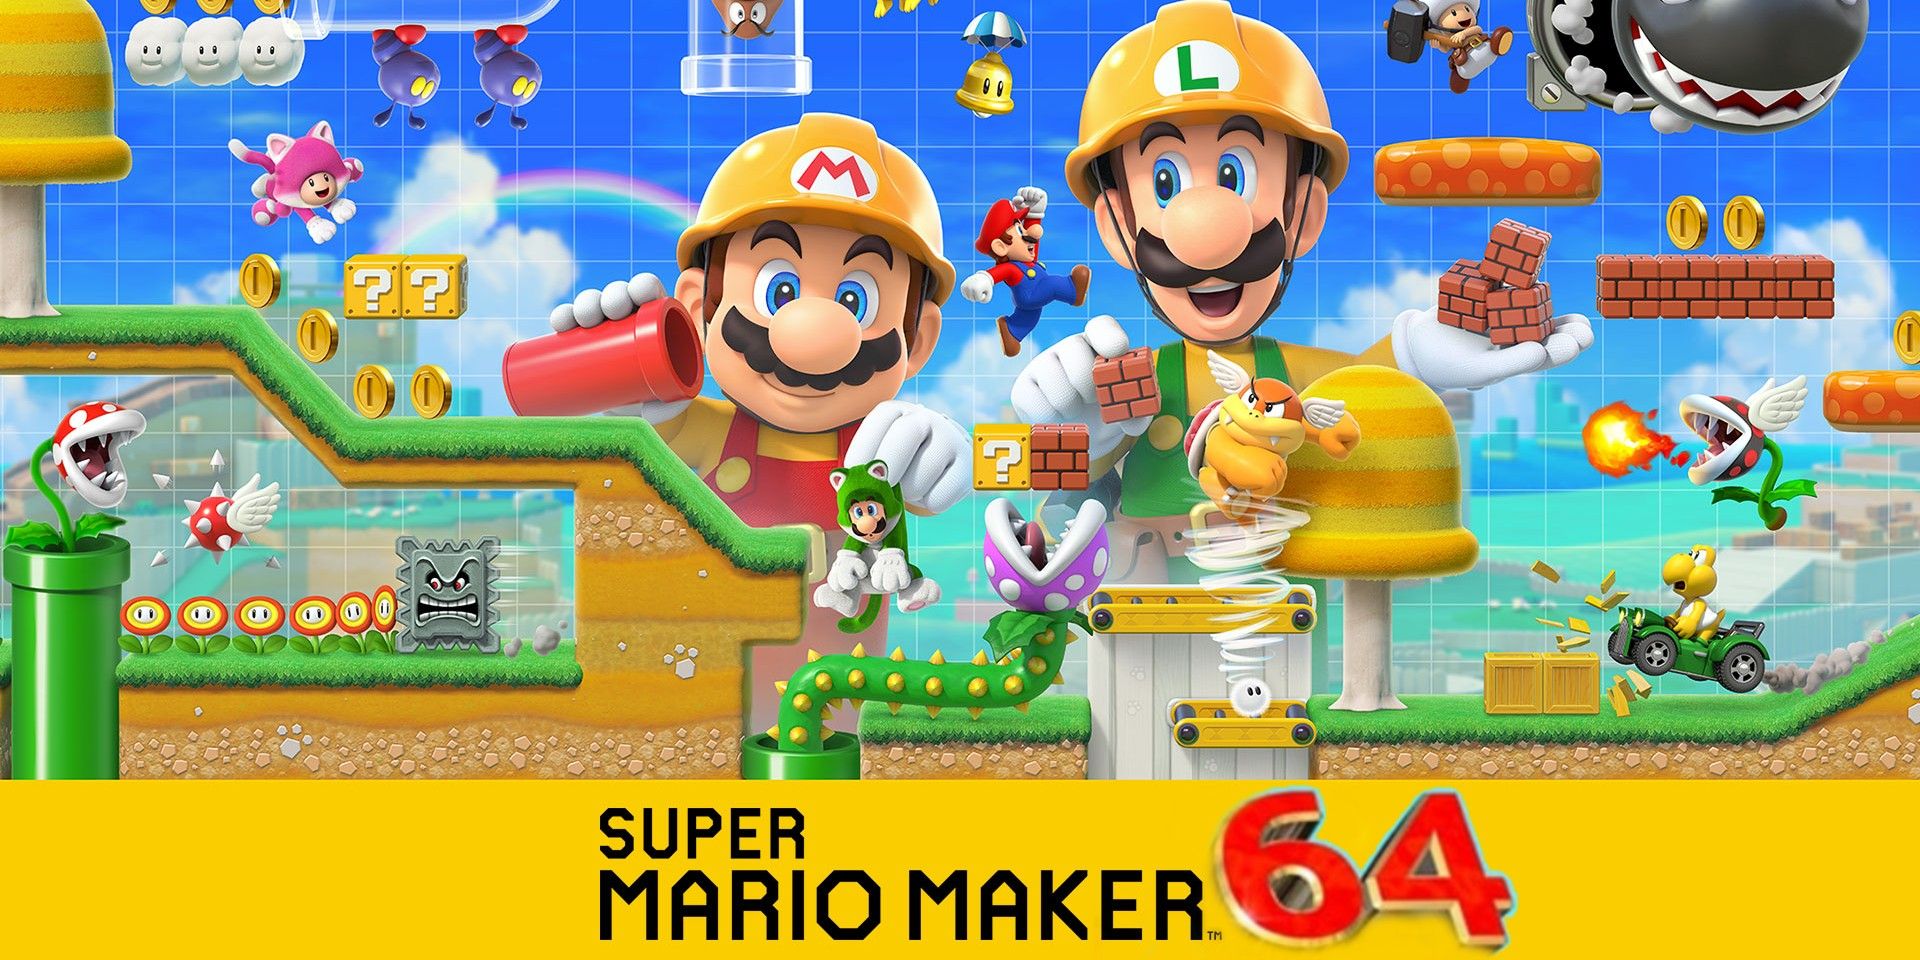 Full Mario Games Hidden In Mario Maker 2